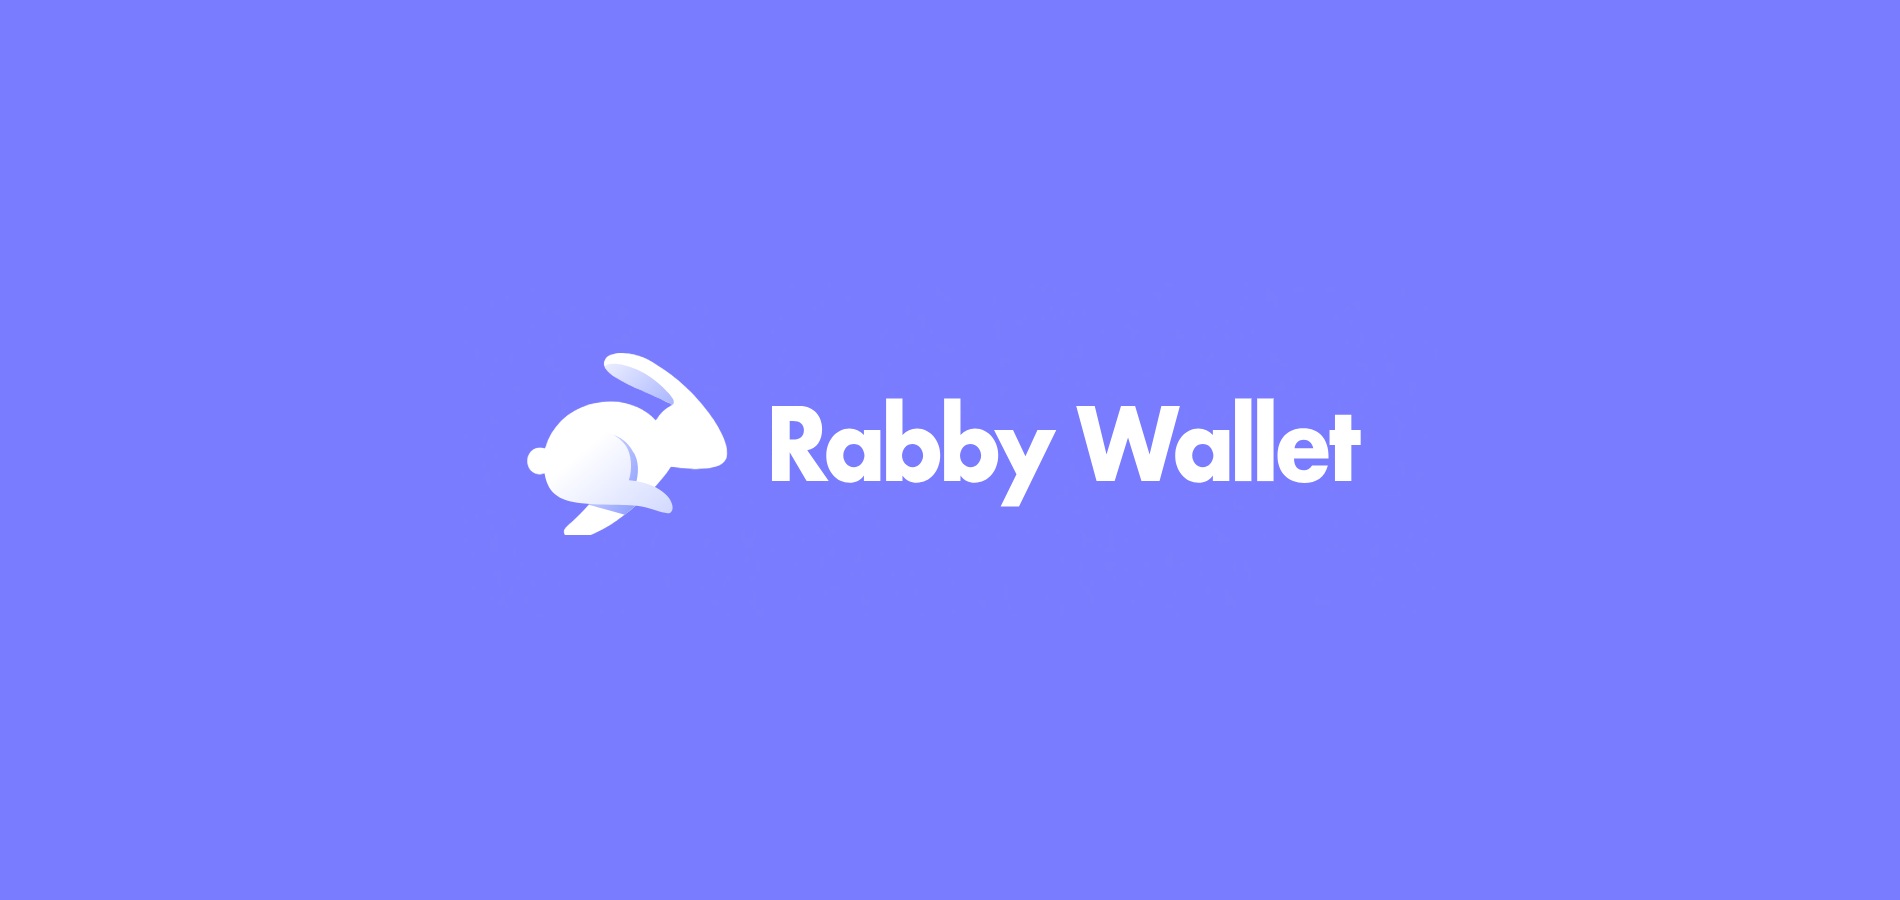 Установка и использование Rabby Wallet